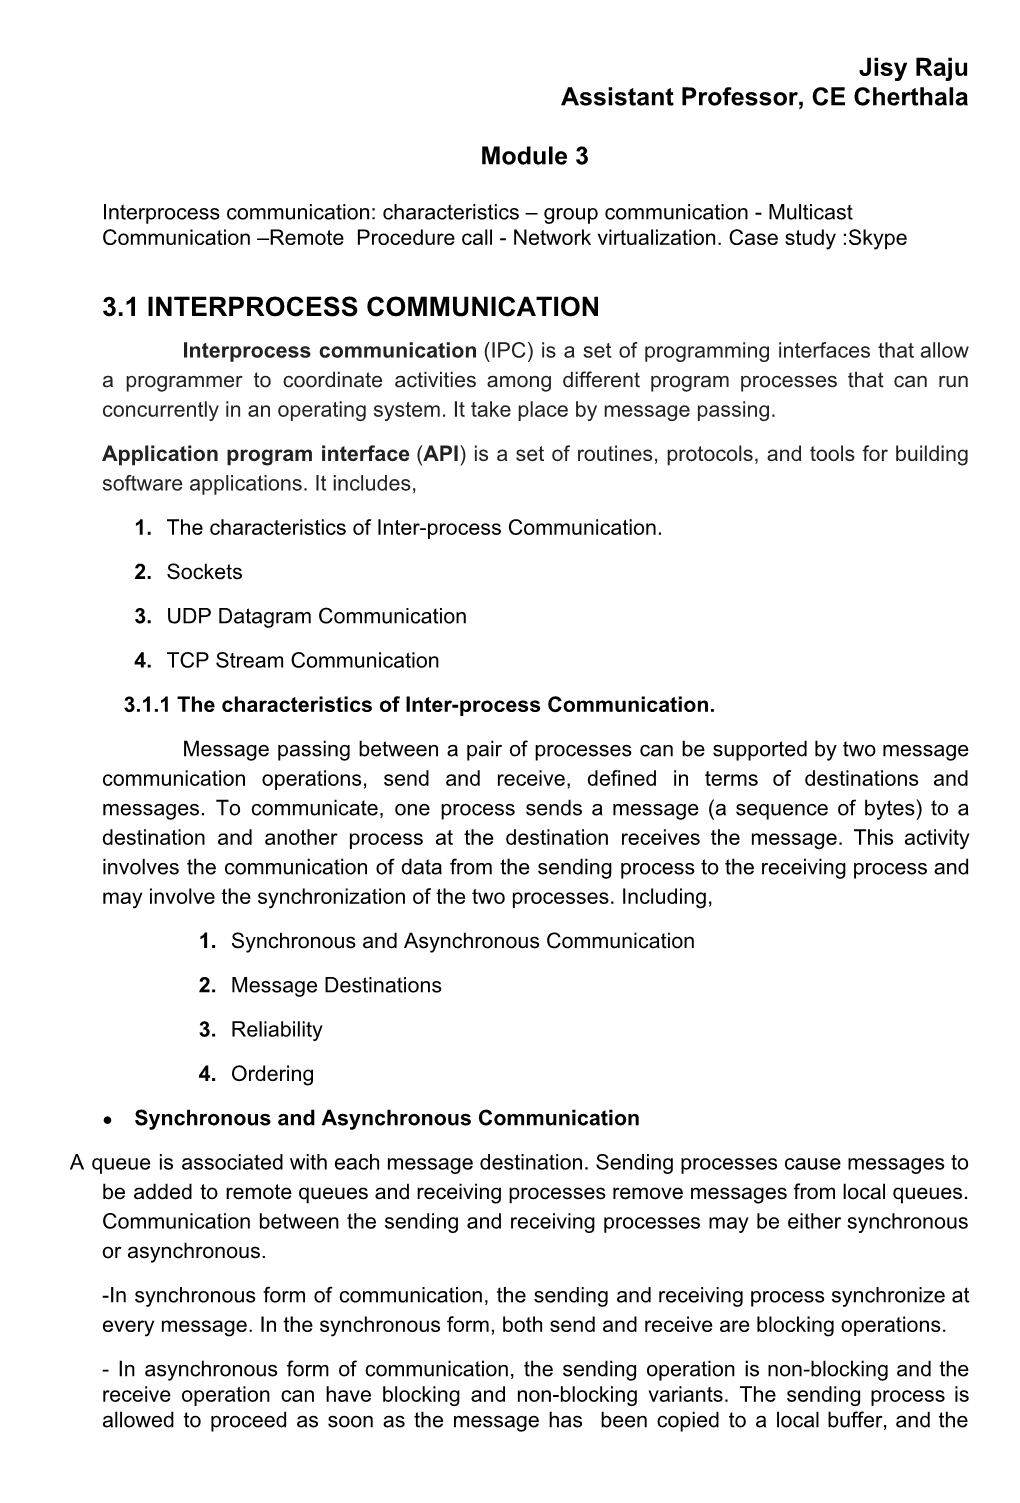 3.1 Interprocess Communication